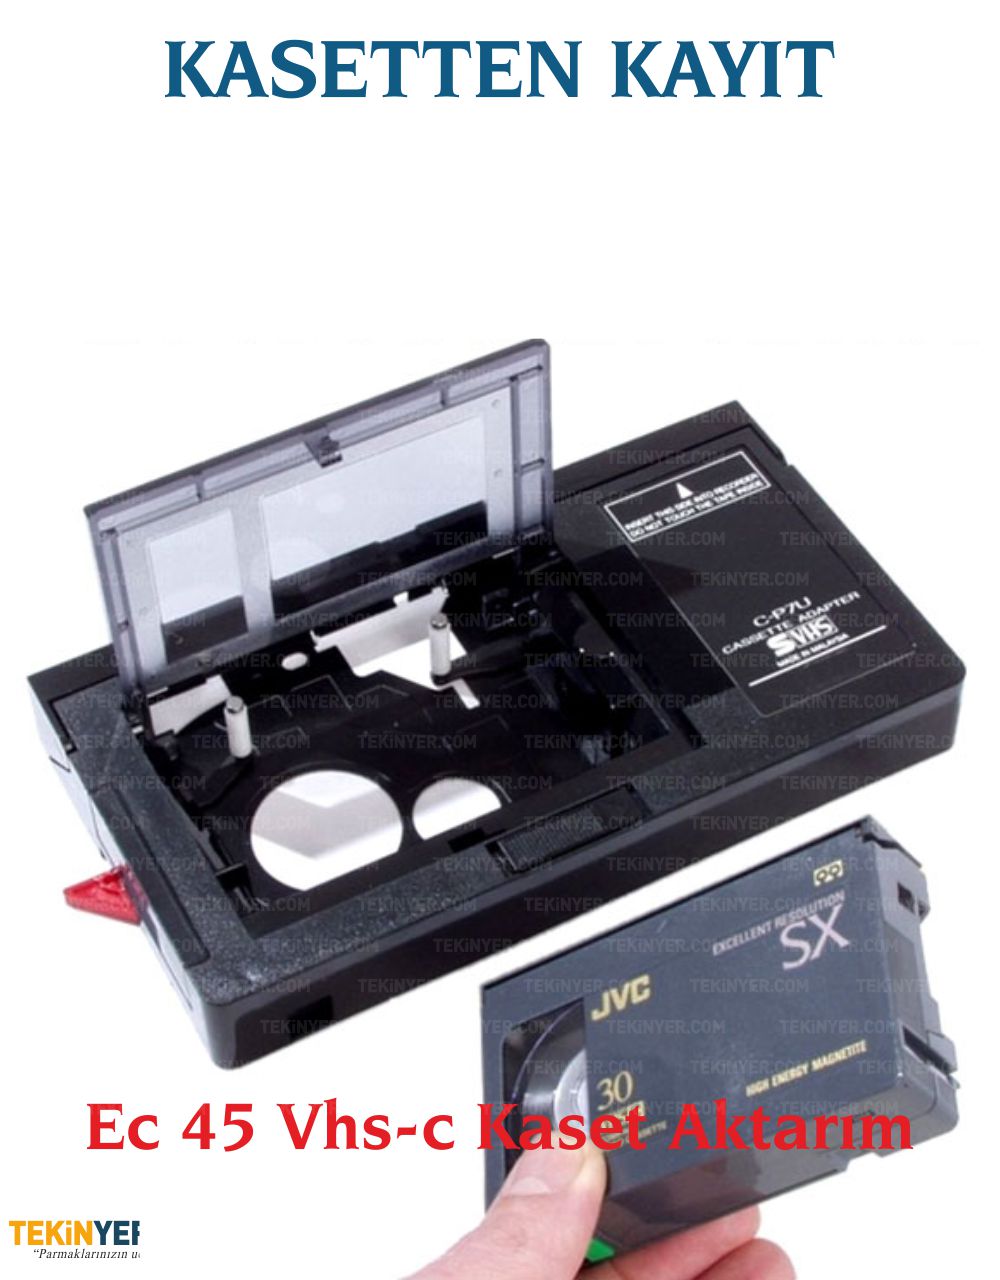 VHS-C ve EC-45 Kasetten Kayıt Aktarım Analog Dijital